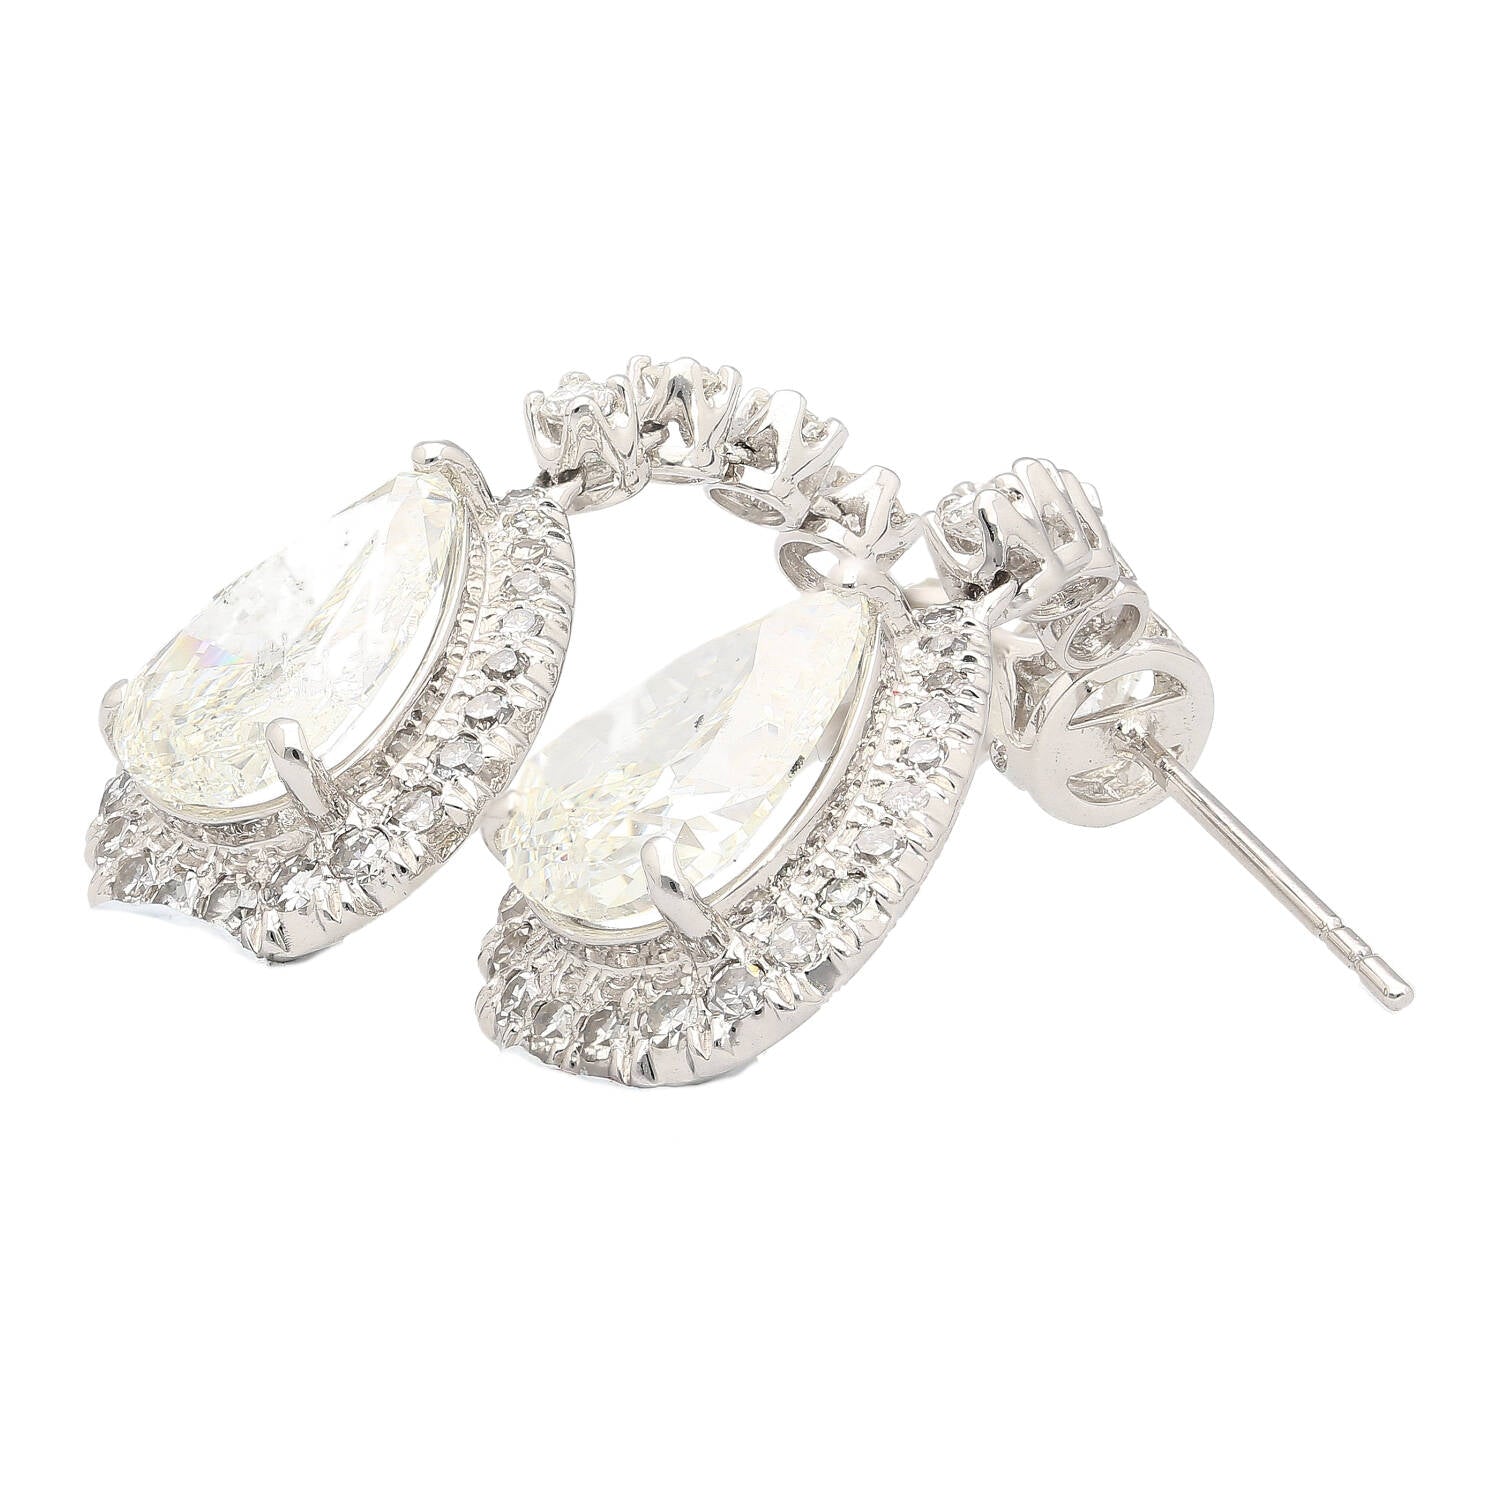 GIA Certified 7.51 Carat Total Pear Cut Diamond Drop Earrings in 18K White Gold-Earrings-ASSAY